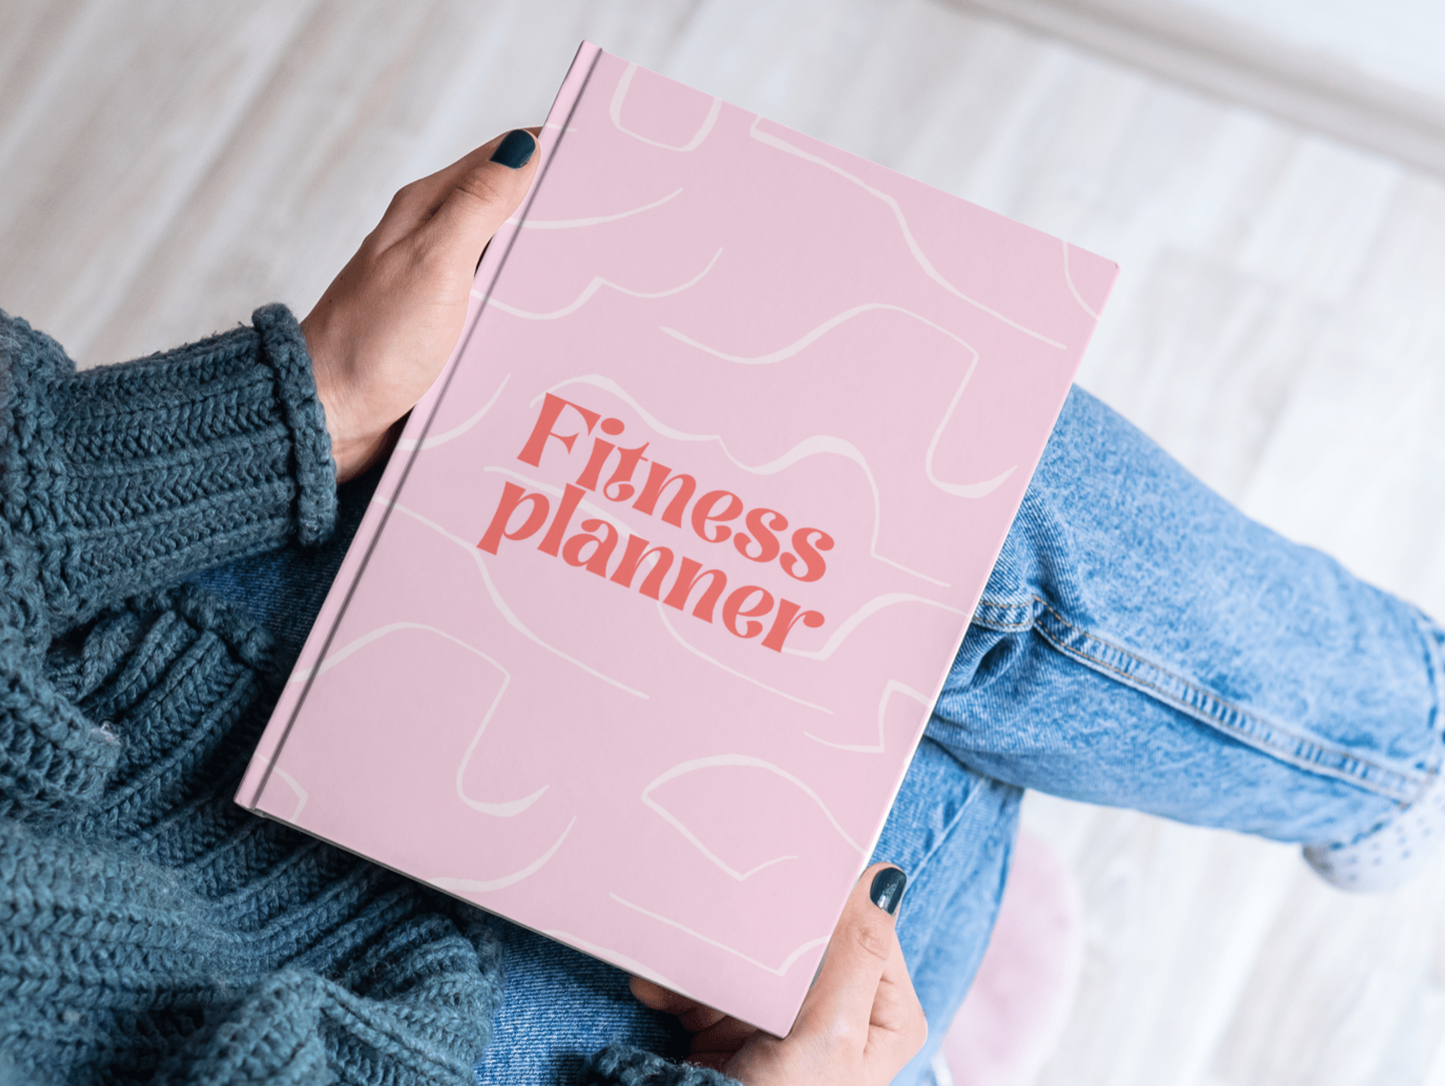 PLR Fitness planner